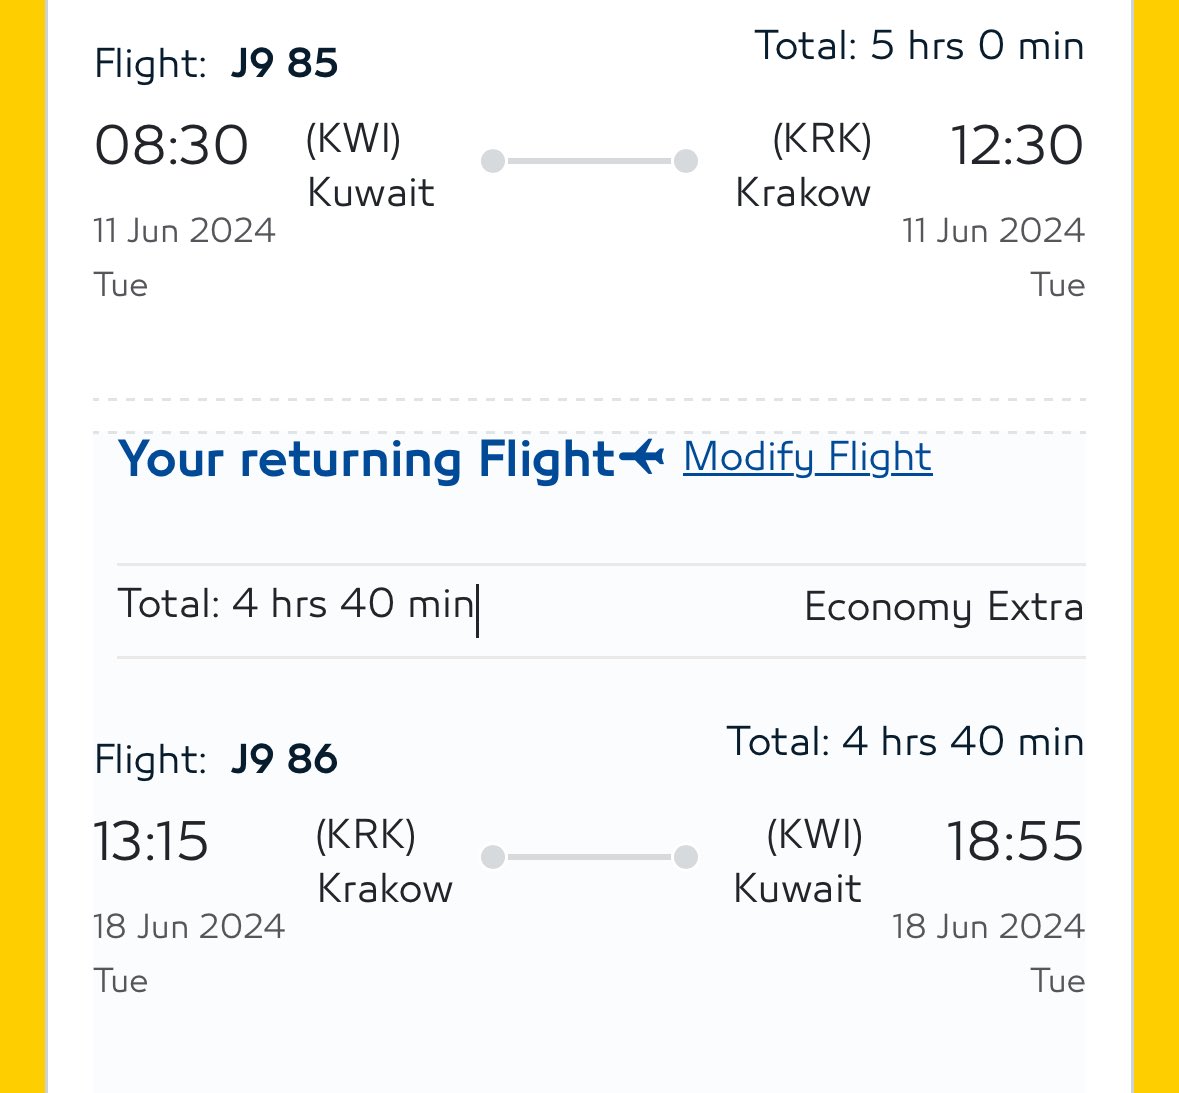 ✈️نقدر نقول مبروك✈️

لتدشين رحلة الى كراكوف من مطار الكويت
على طيران @JazeeraAirways 

أعتقد تاريخ أول رحلة راح يكون بتاريخ 11يونيو الشهر المقبل

راح تكون بواقع رحلتين (الثلاثاء-الجمعة)

@Saadajaj 
@alazmi1967 
@AHMADALAZMI74